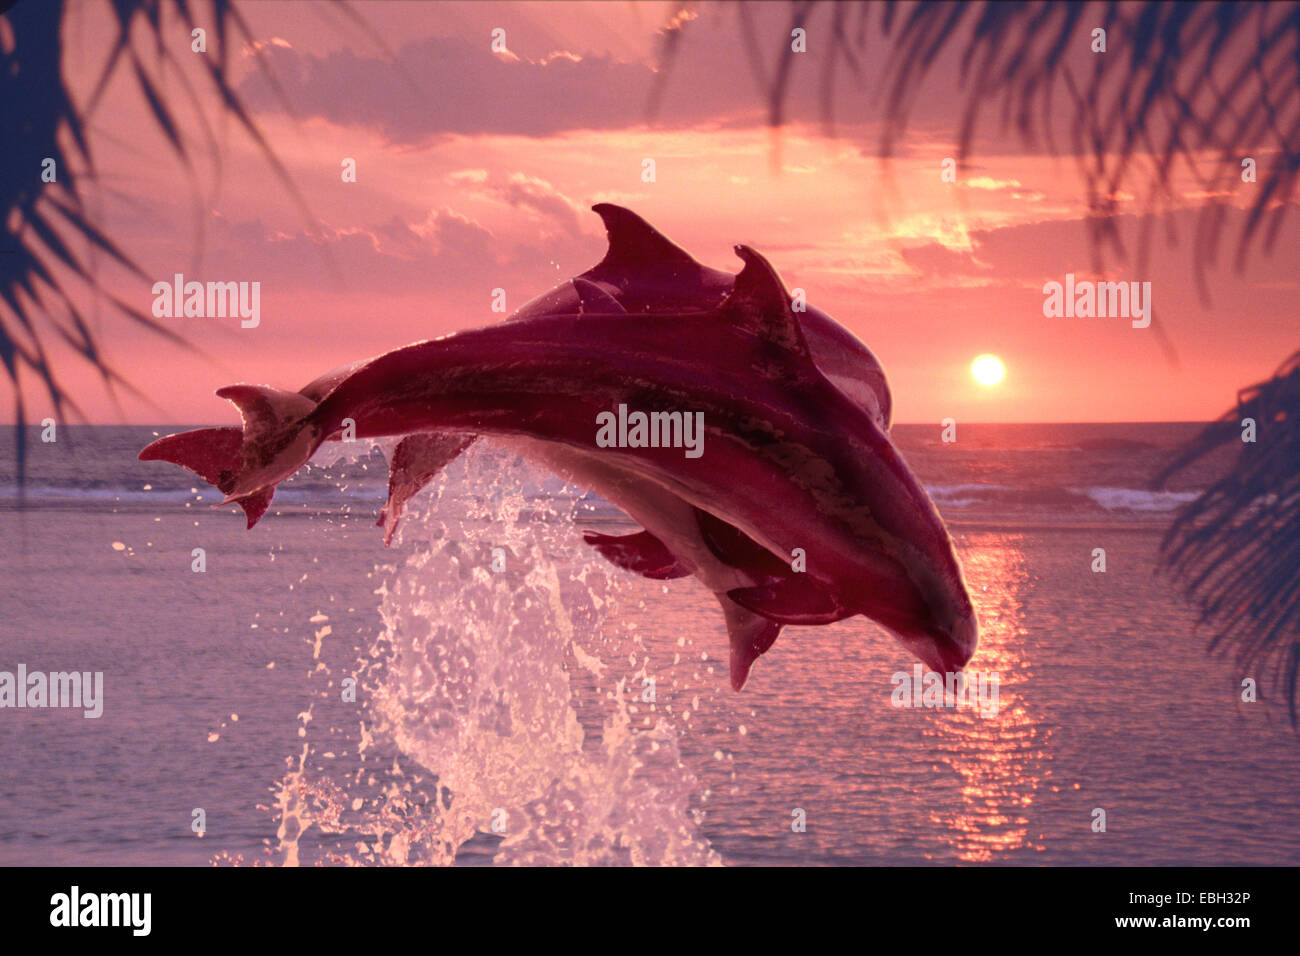 bottlenosed dolphin, common bottle-nosed dolphin (Tursiops truncatus). Stock Photo